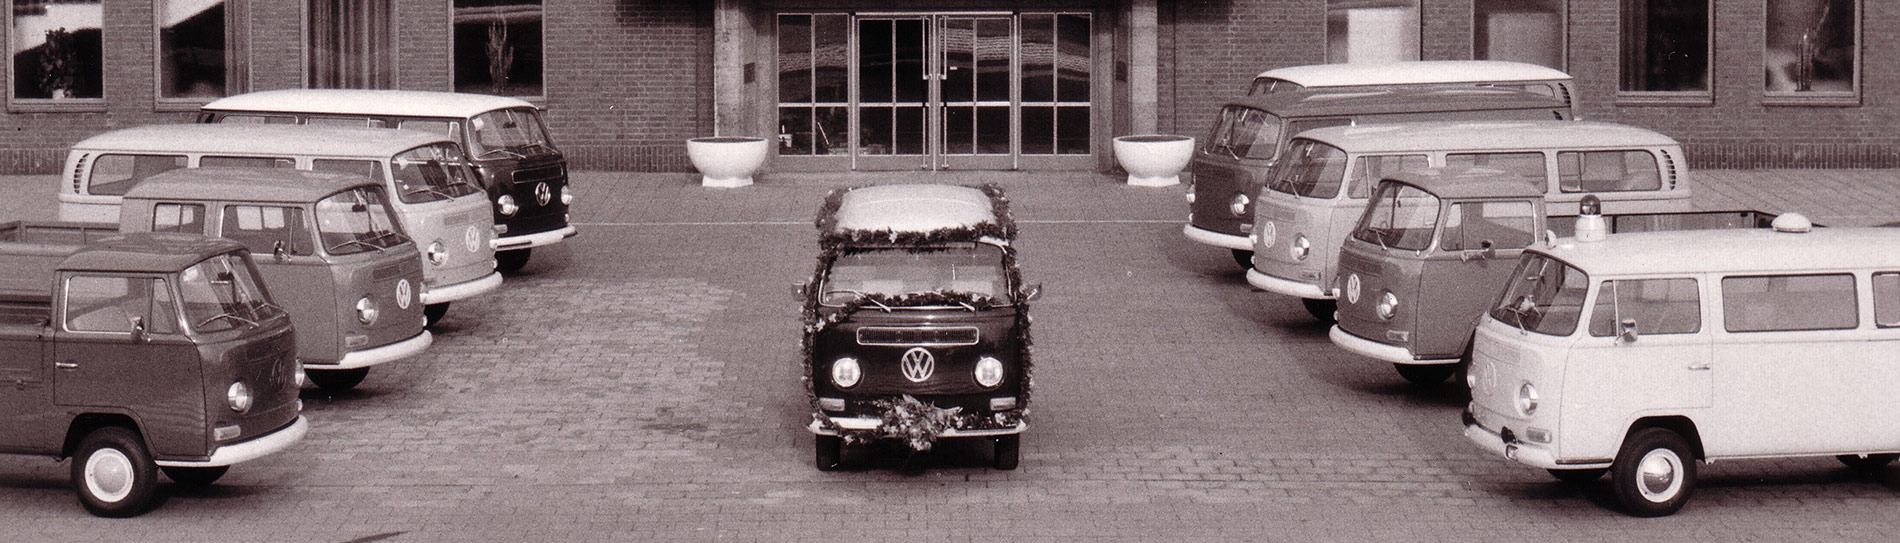 6.11.1972: VW stellt E-Bulli vor - Bremen Eins